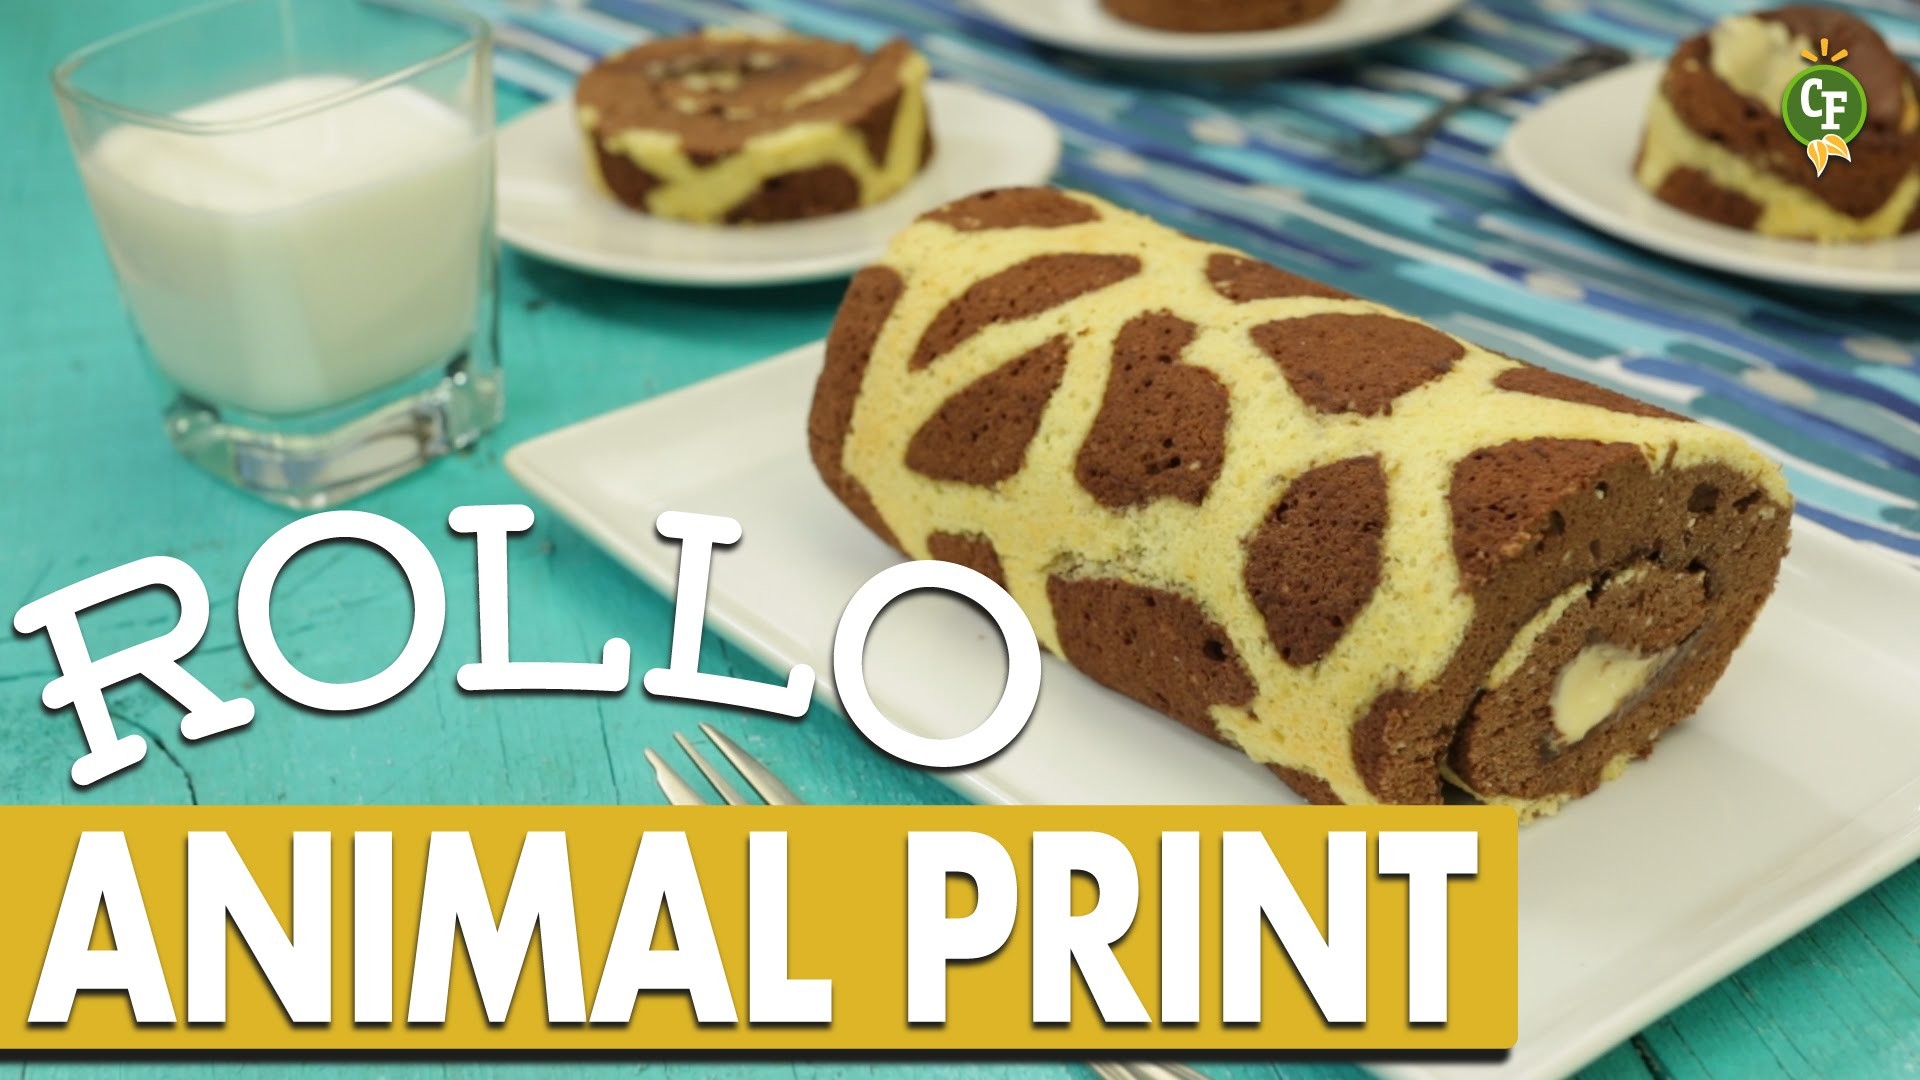 ¿Cómo preparar Rollo de Animal Print con Relleno de Plátano? - Cocina Fresca